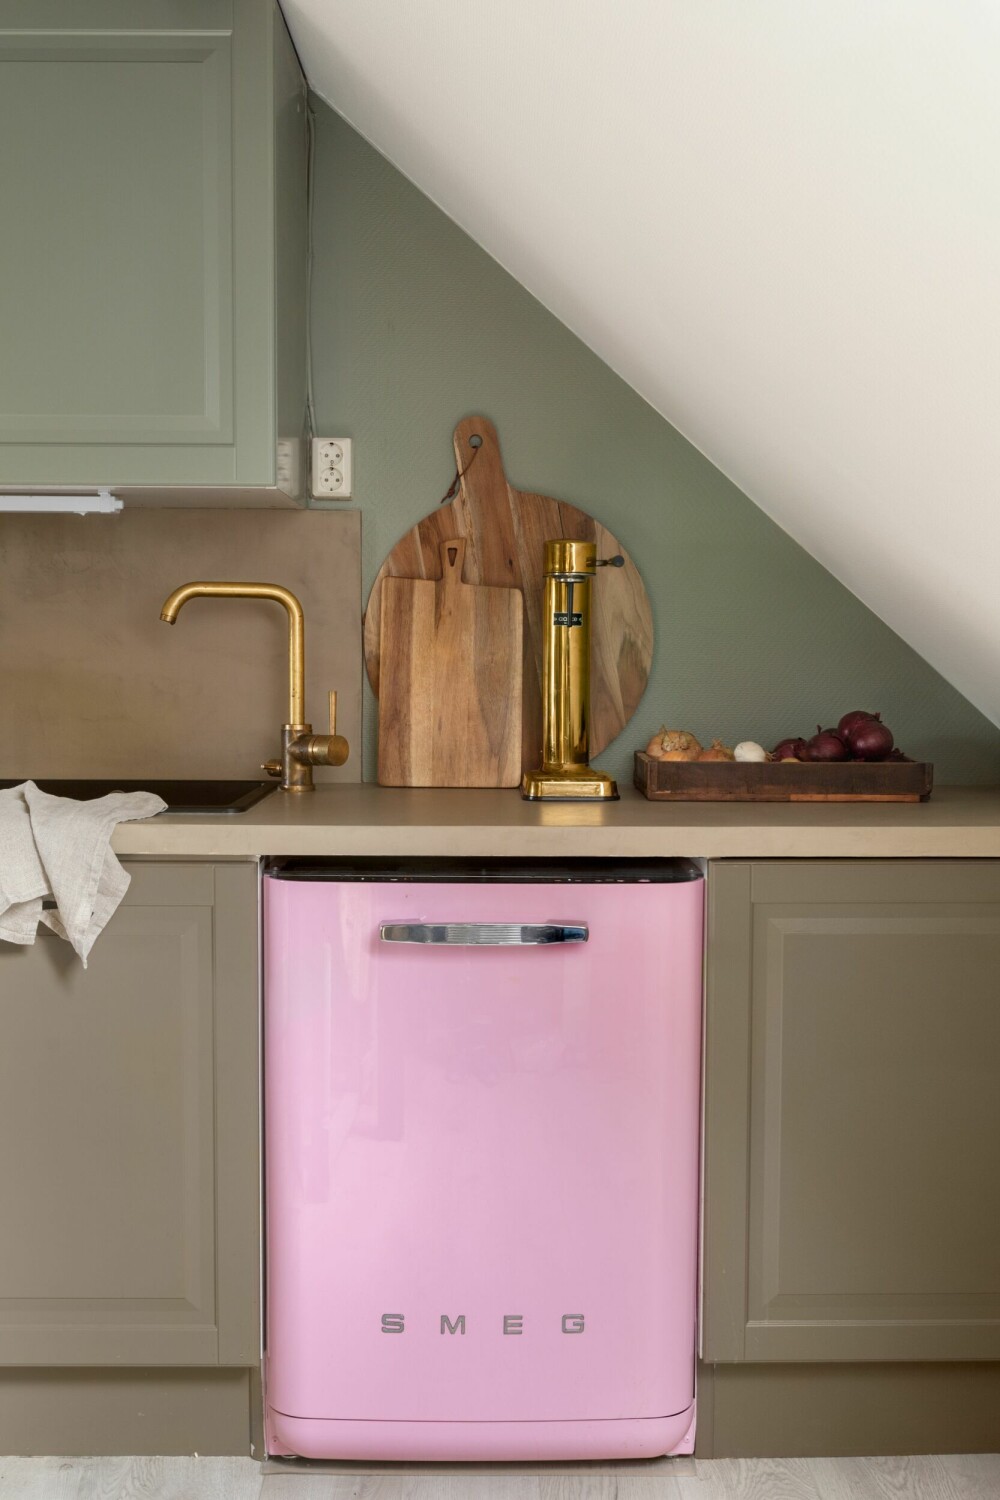 OPPVASKMASKIN: Den rosa oppvaskmaskinen ble kjøpt brukt via Finn for en del år siden, og Engla har valgt å beholde den som en liten fargeklatt på kjøkkenet.